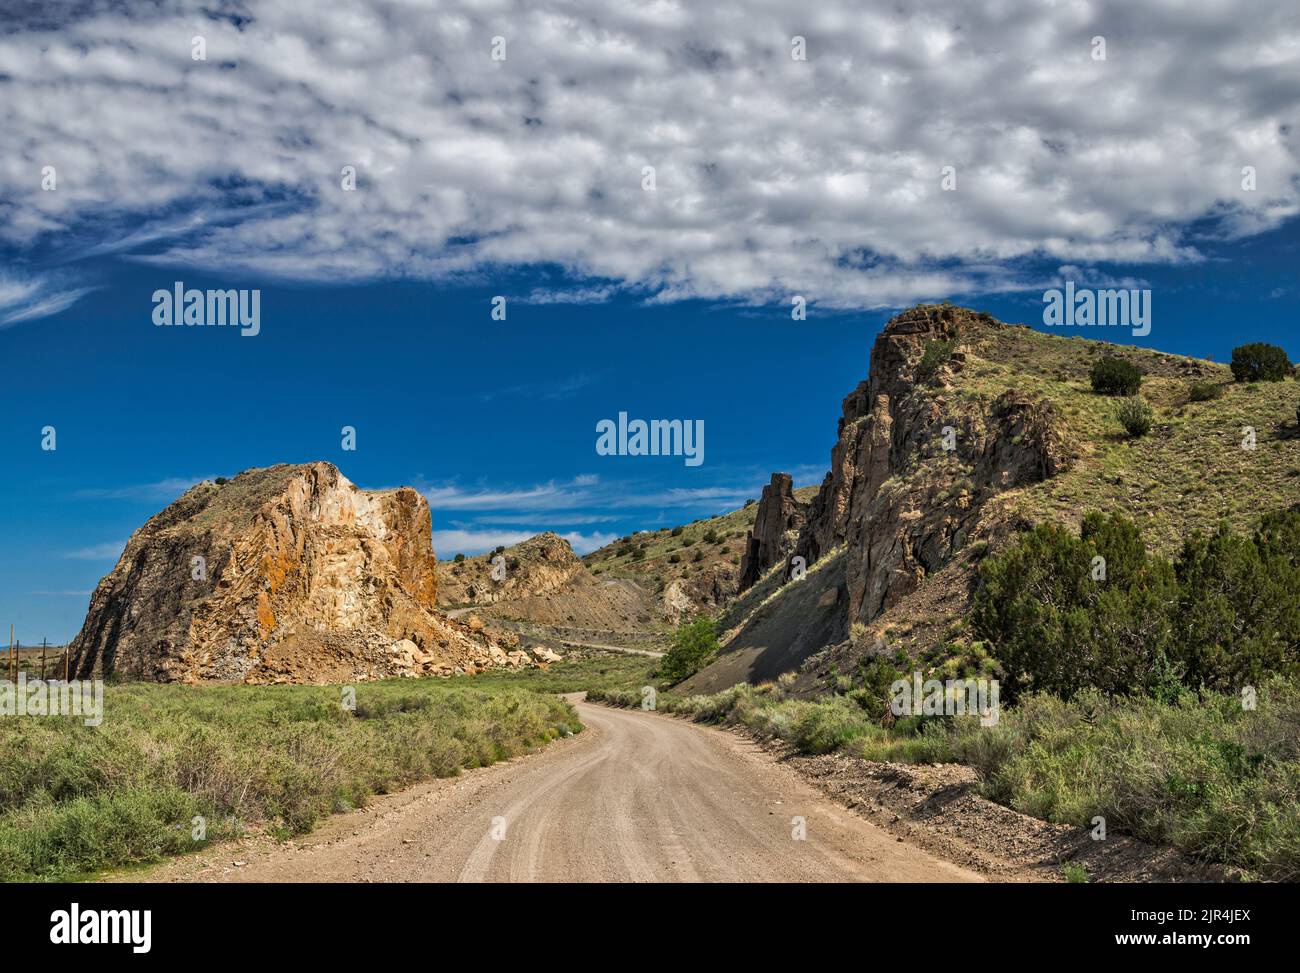 Devils Throne, intrusion ignée, parc national de Cerrillos Hills, près de Los Cerrillos, Nouveau-Mexique, États-Unis Banque D'Images